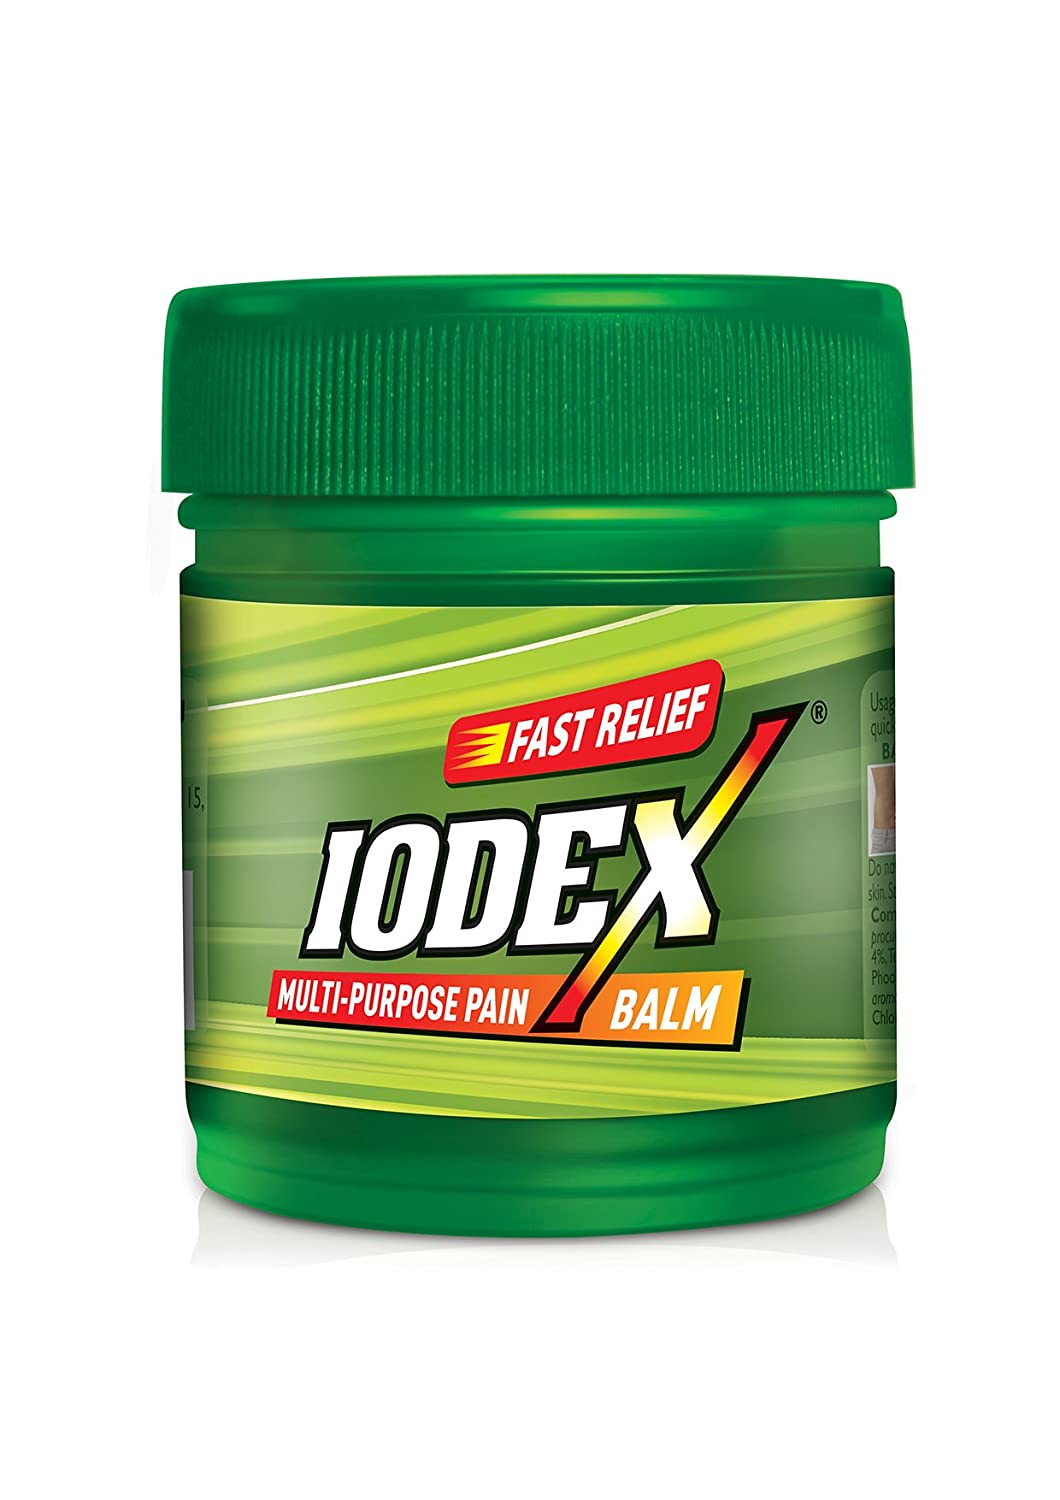 Iodex 8 gm"